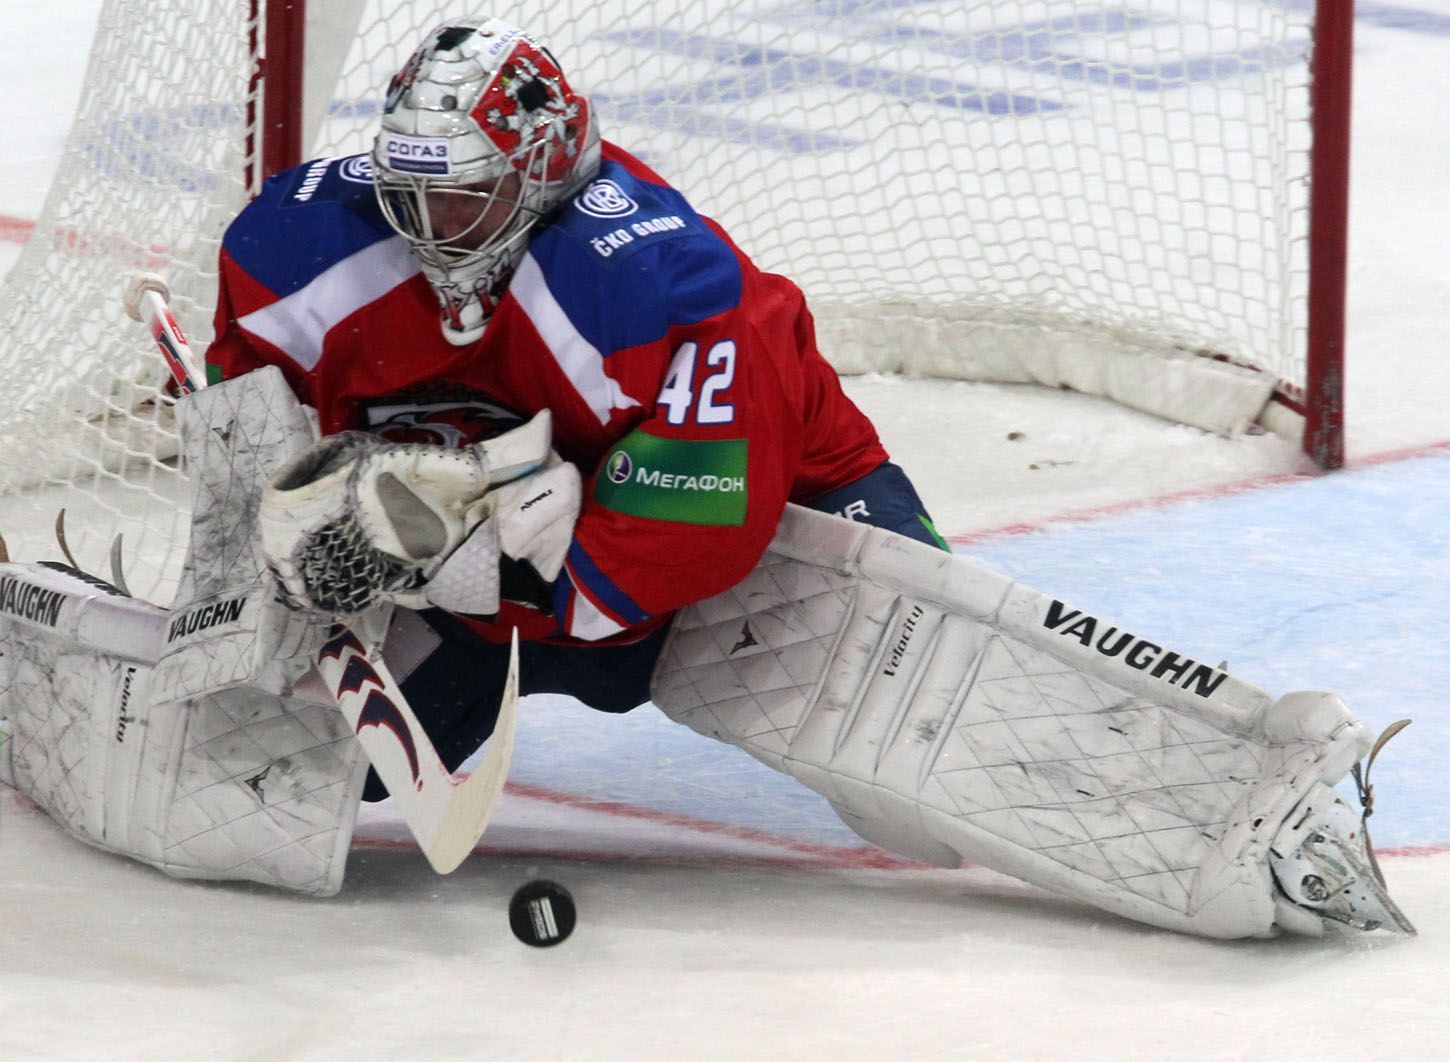 Hokejový brankář Lva Praha Tomáš Pöpperle chytá střelu v utkání KHL proti SKA Petrohradu.